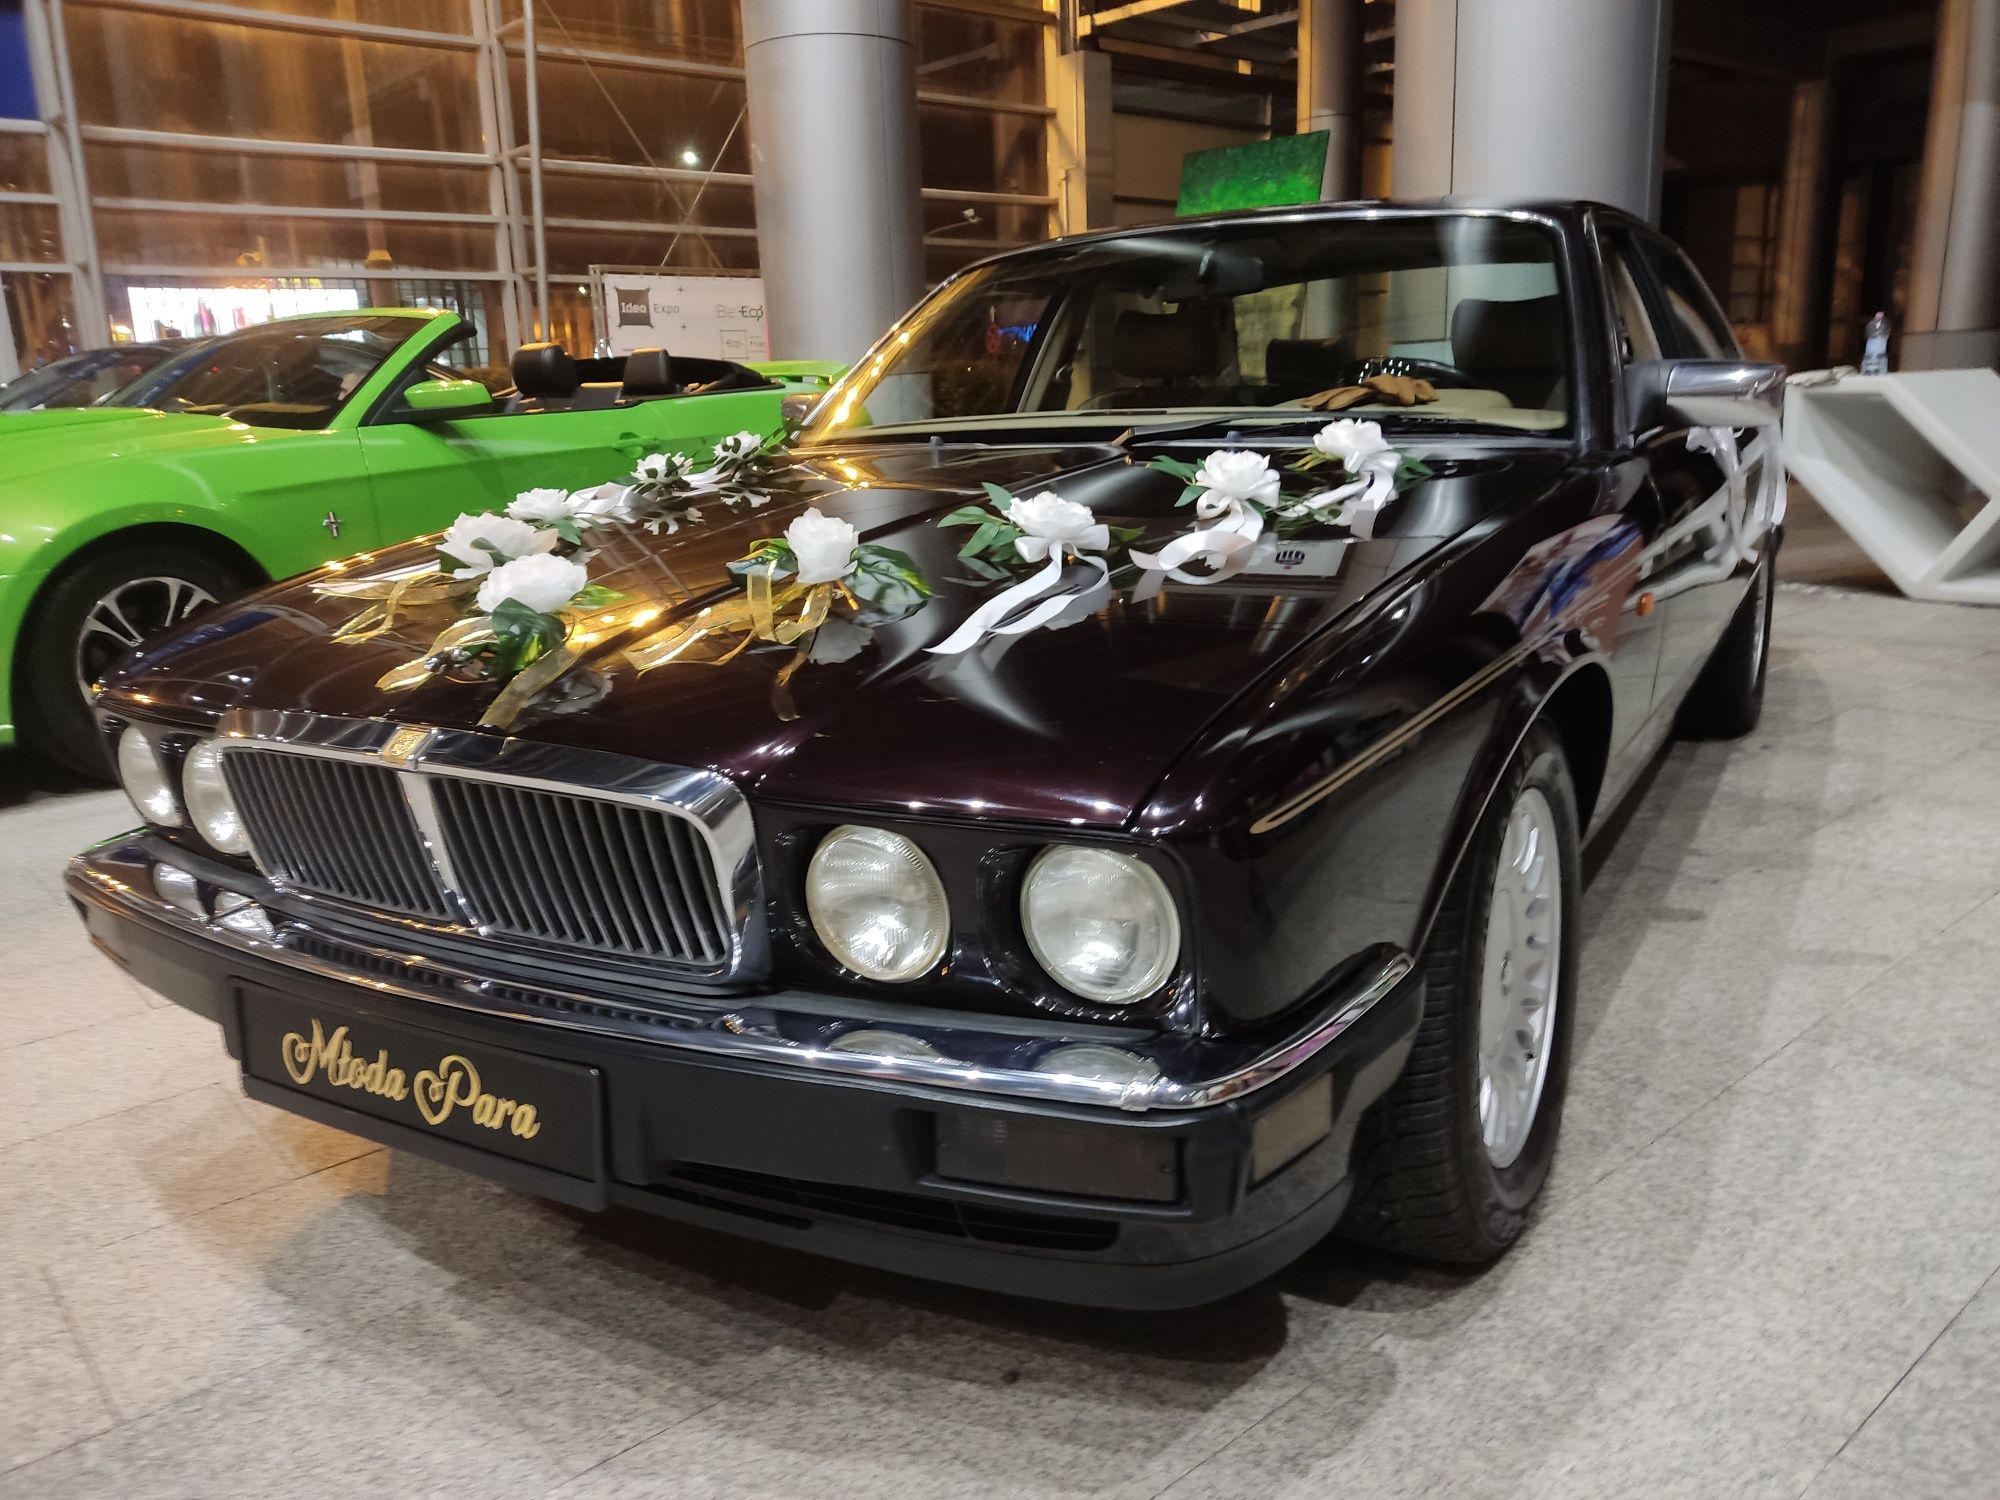 Jaguar XJ40 auto z szoferem do ślubu i inne okazje